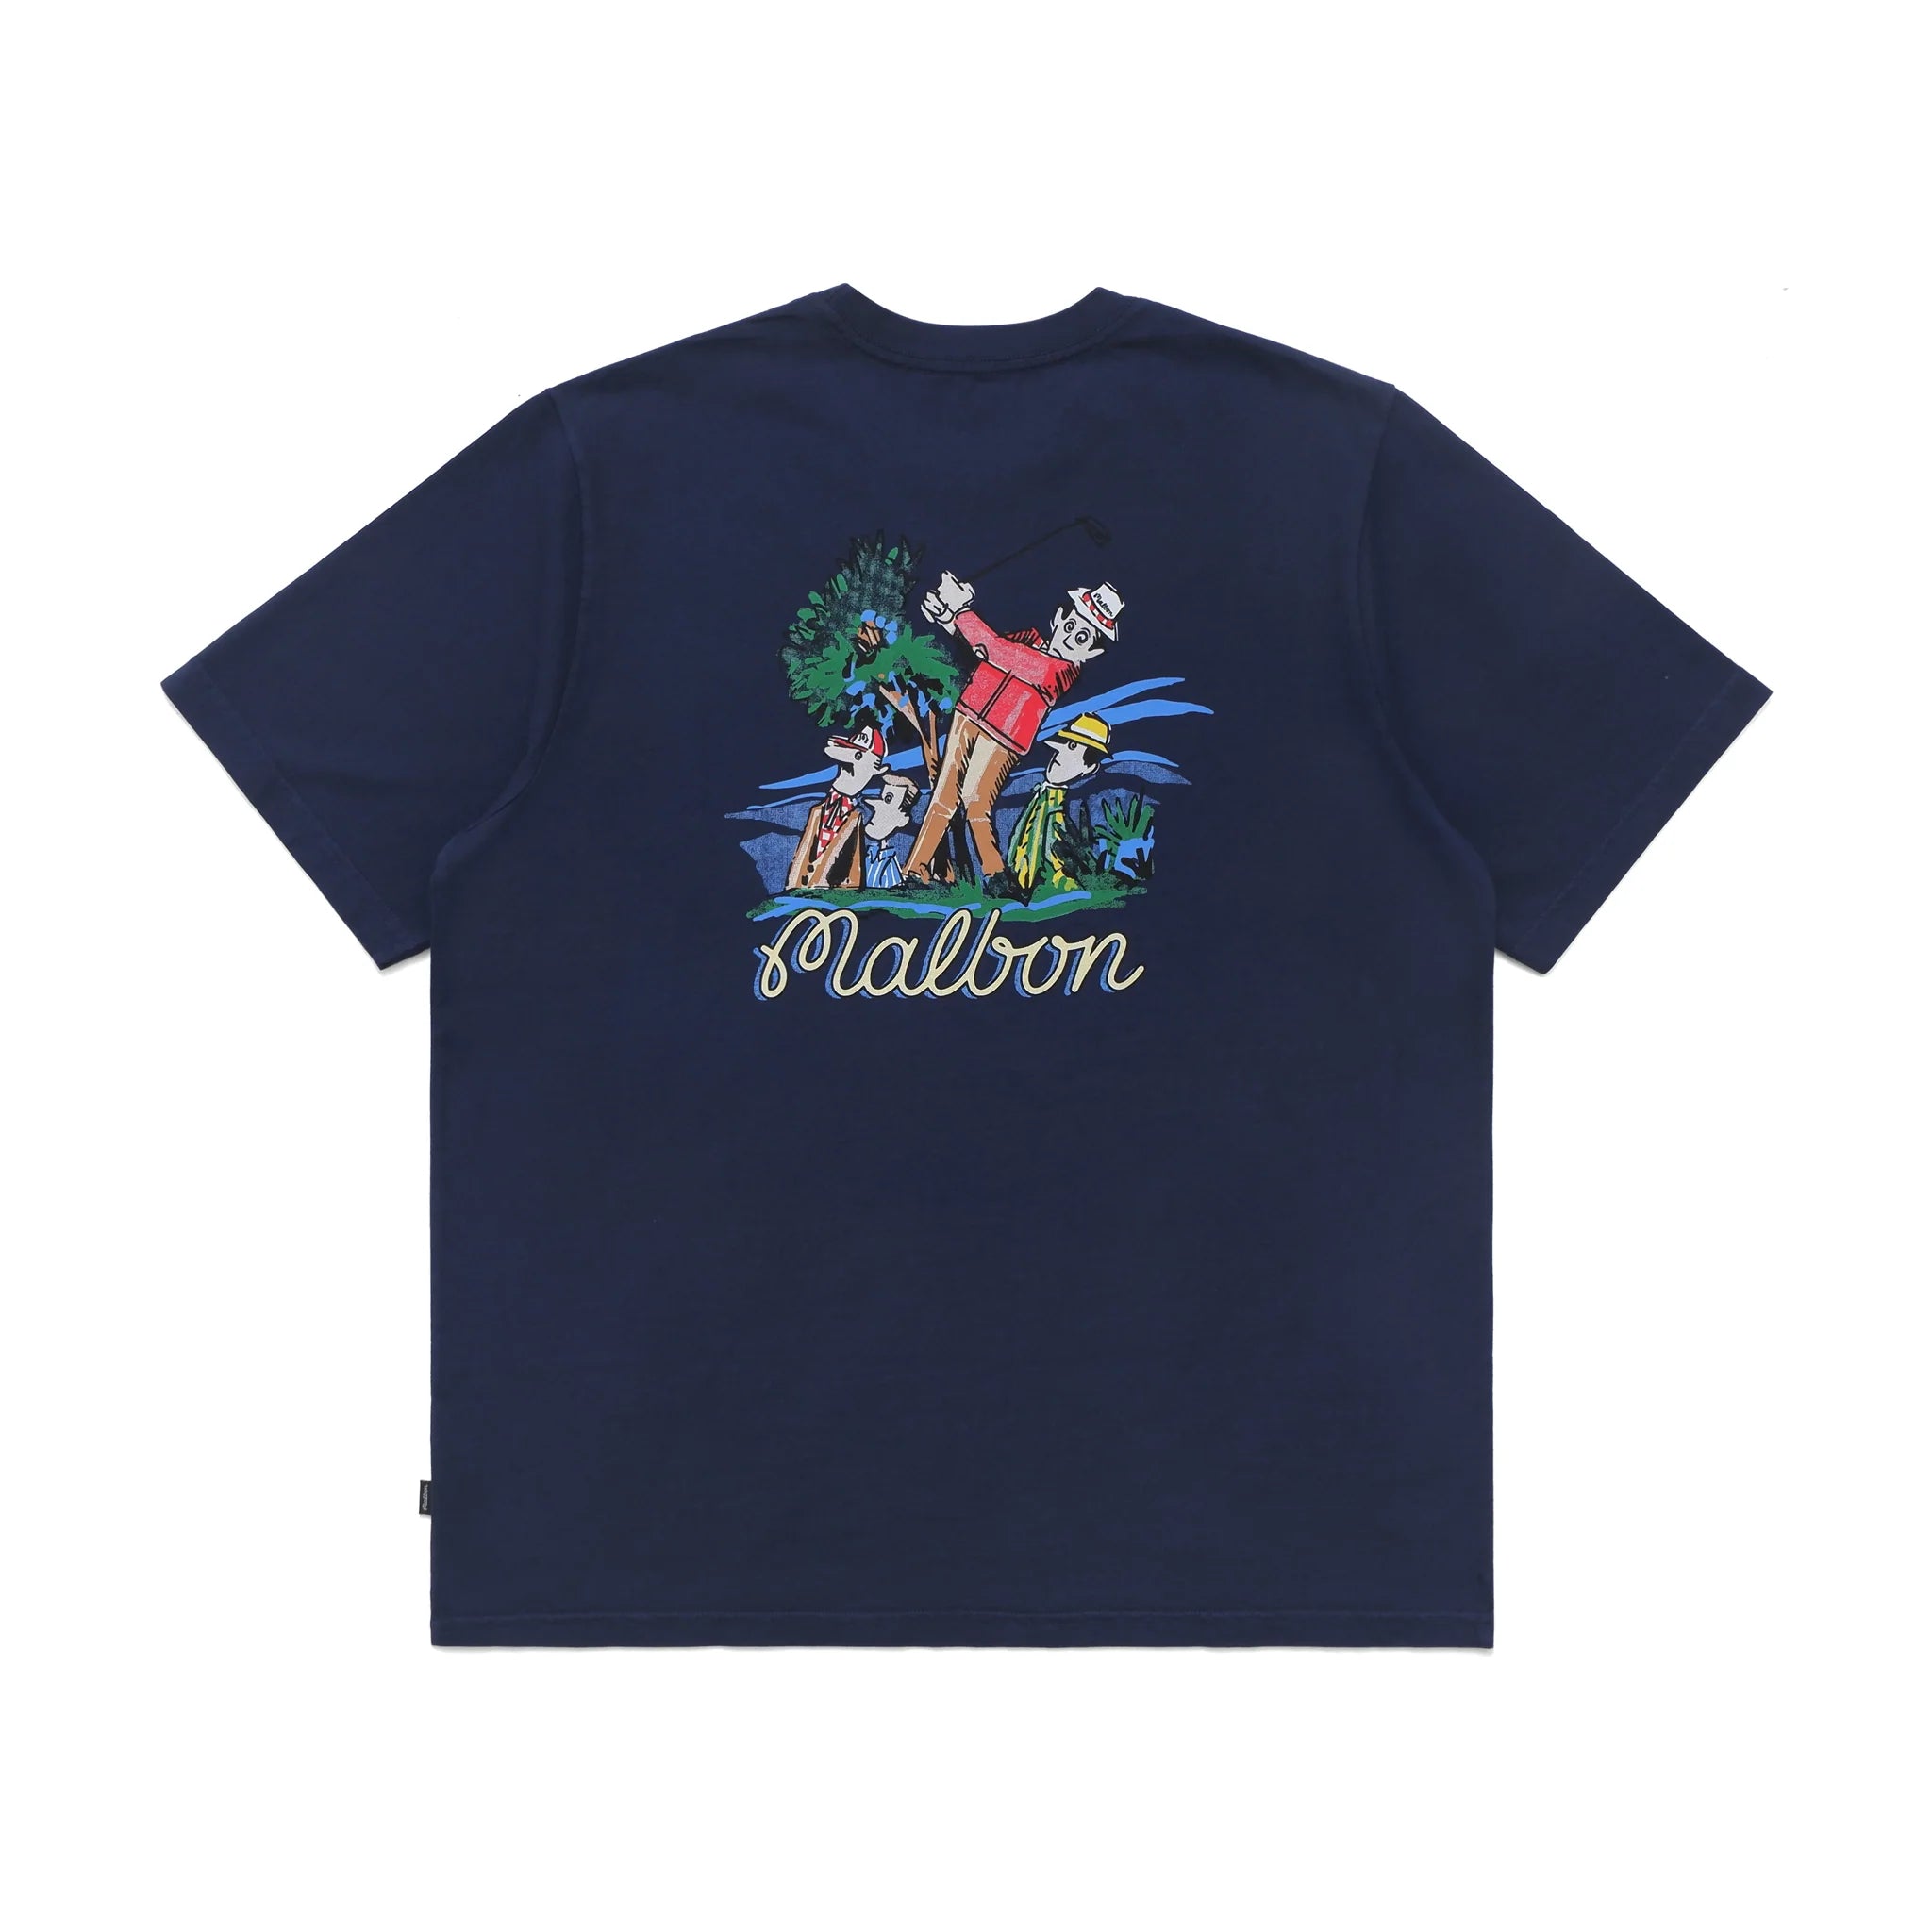 神経質な方はご遠慮下さいMalbon x Beats By Dre T-Shirt Mサイズ マルボン